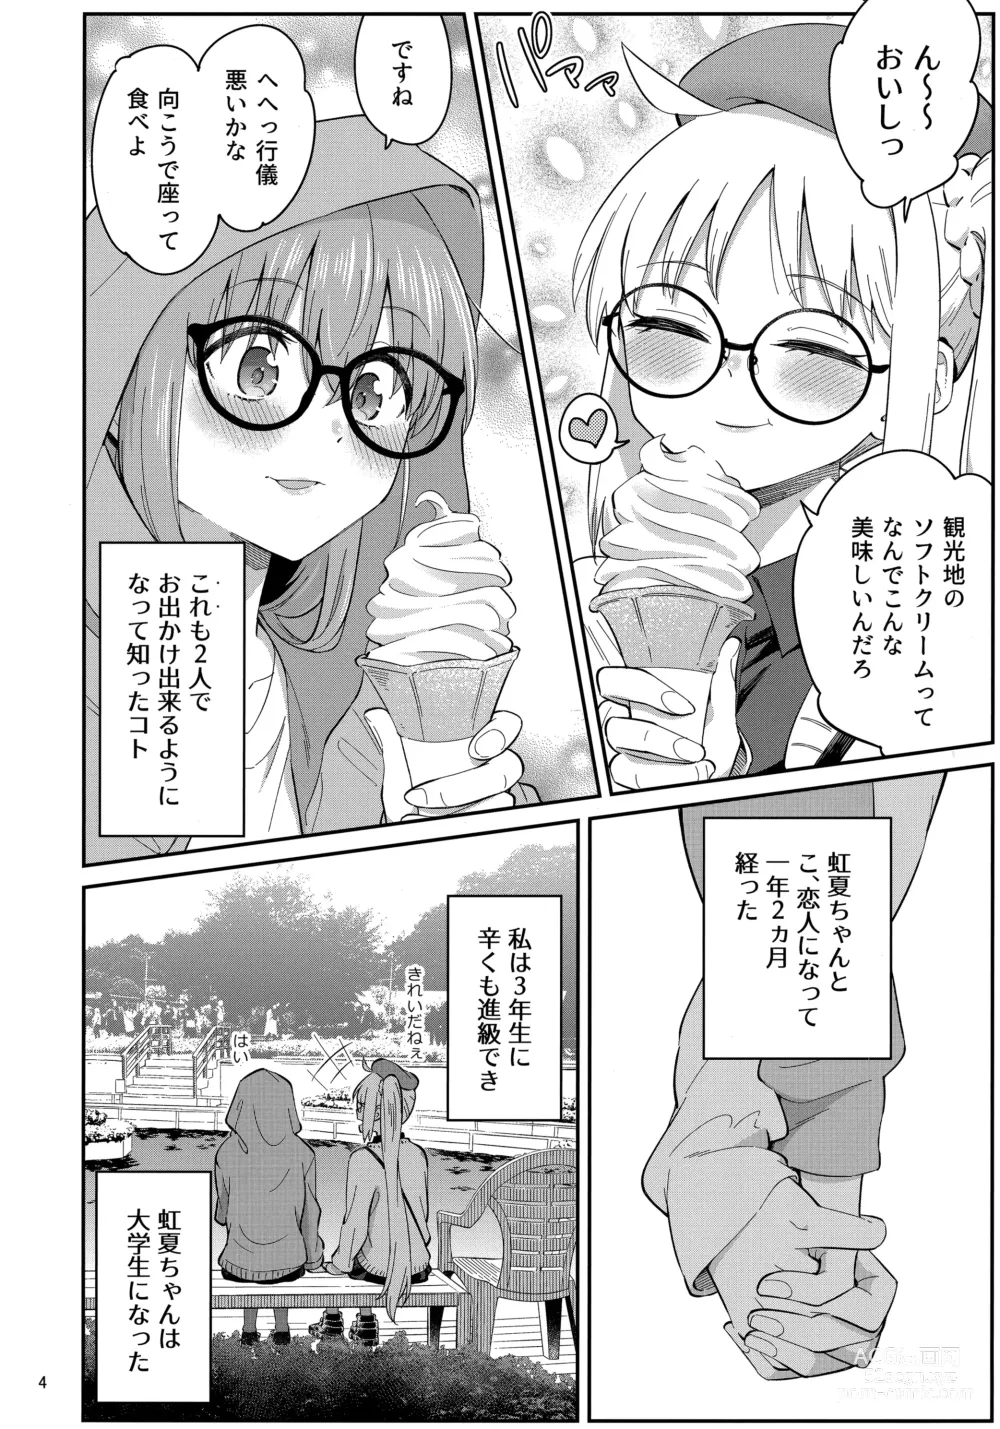 Page 3 of doujinshi Netsu o Mazete Shin o Tokashite